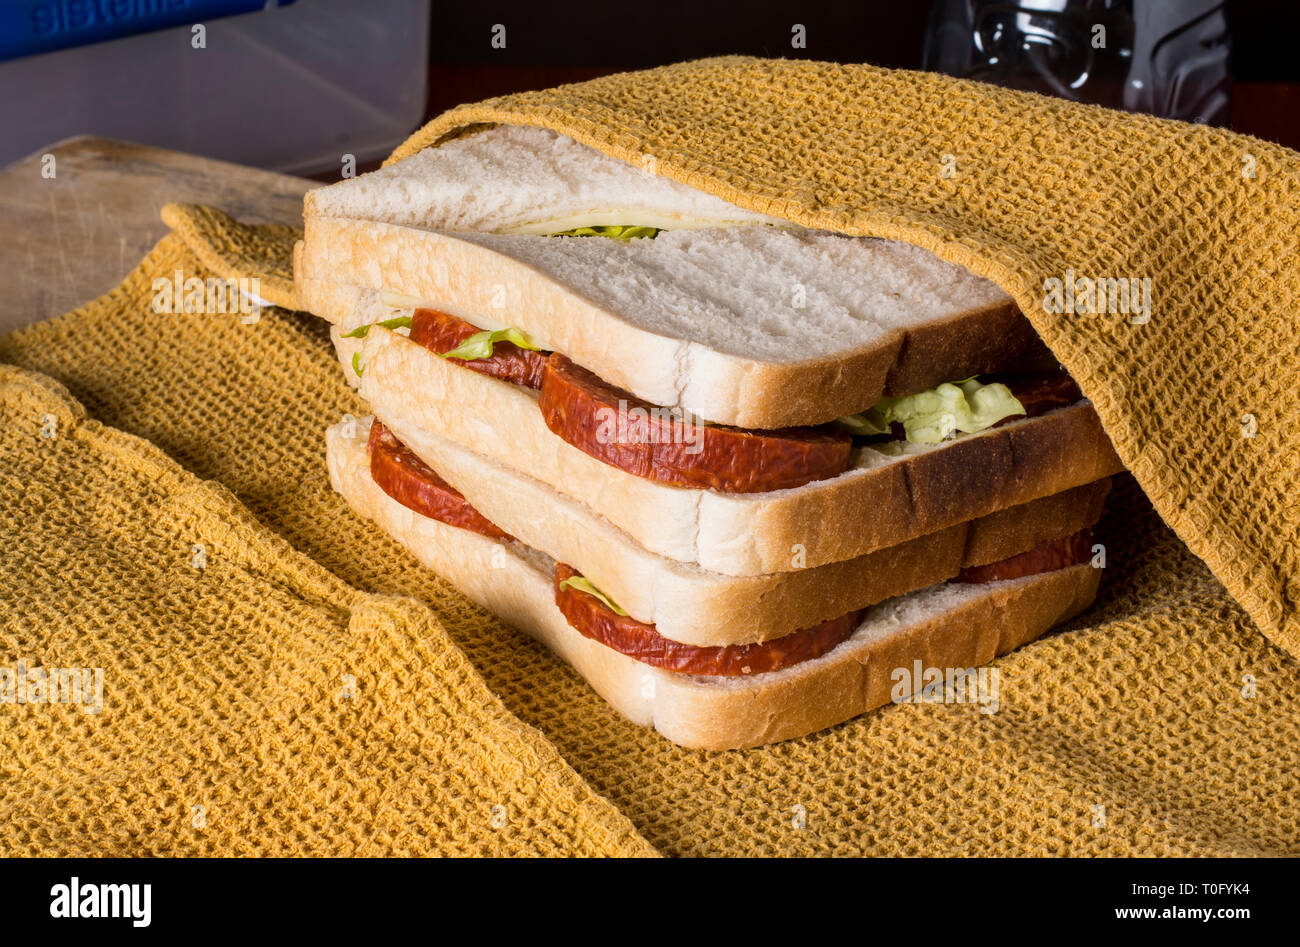 Sandwiches étant enveloppé dans un chiffon Banque D'Images